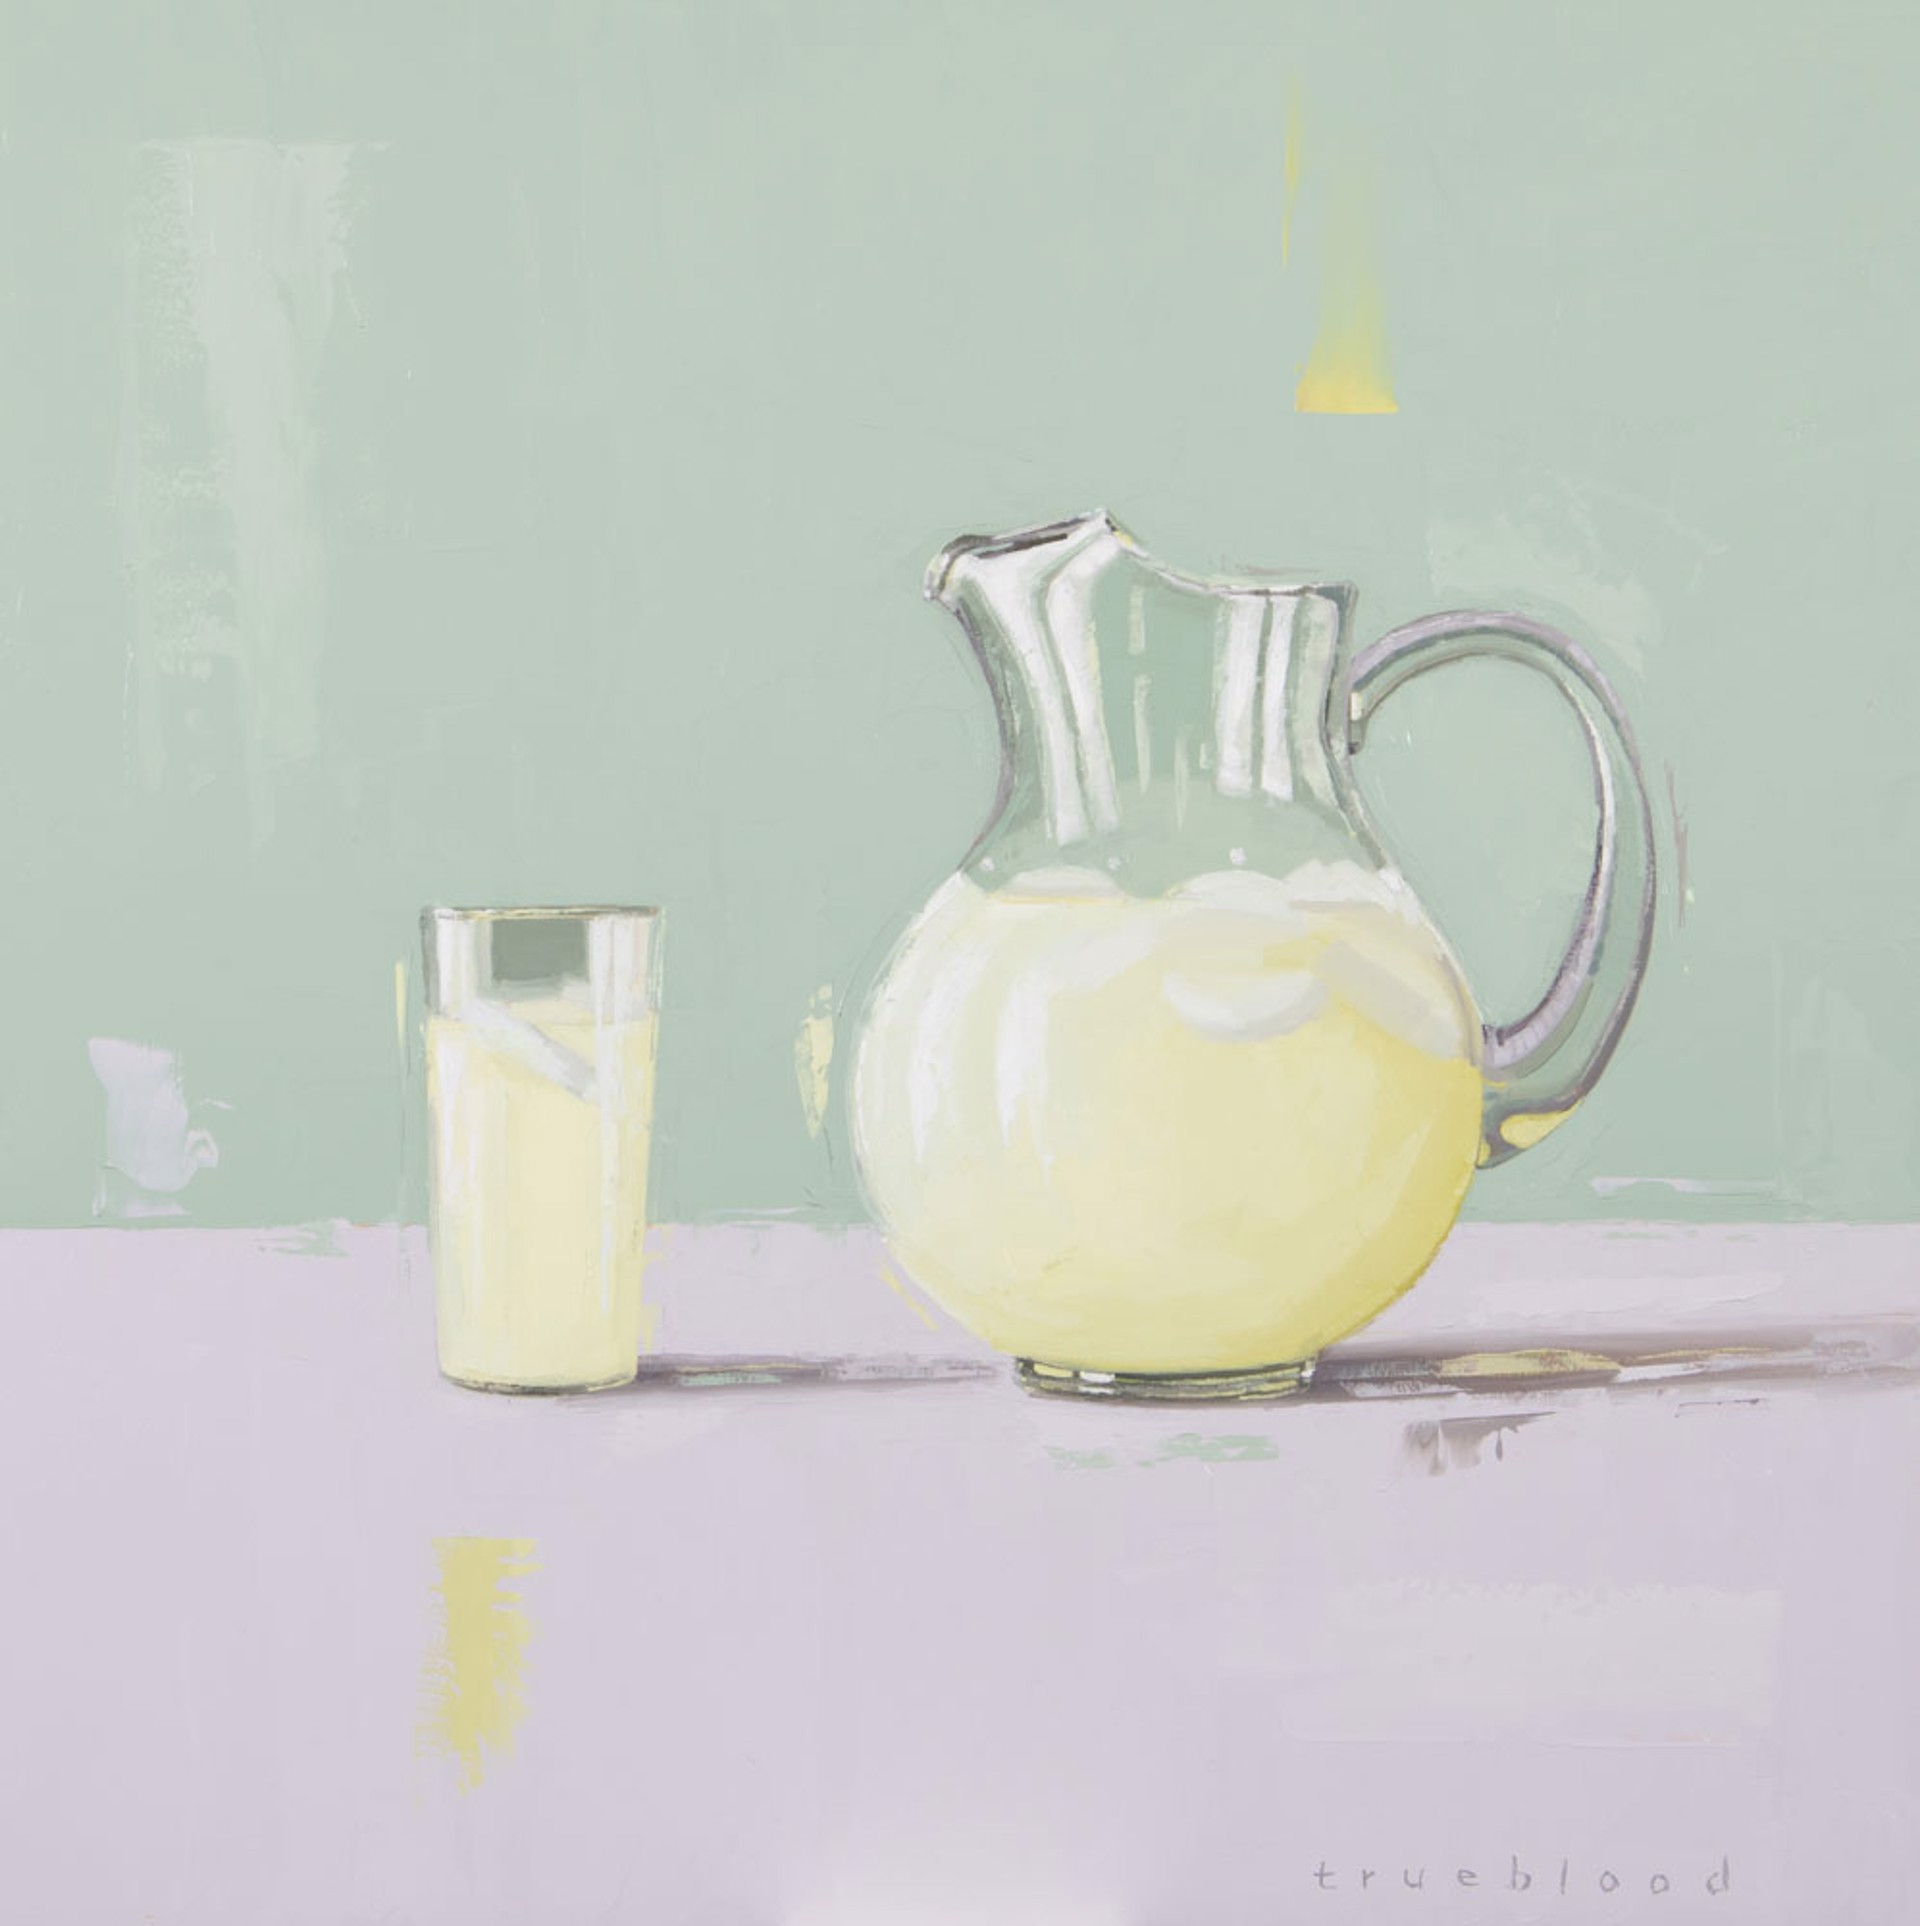 Lemonade by Megan Trueblood